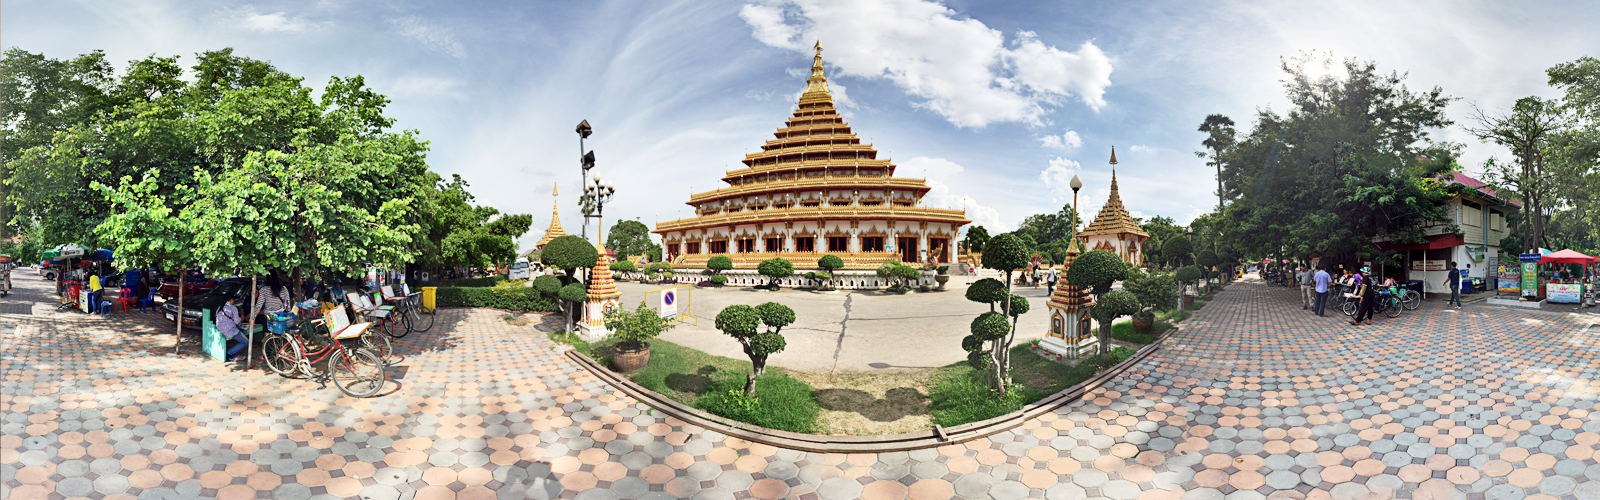 Nong Waeng Temple in Khon Kaen